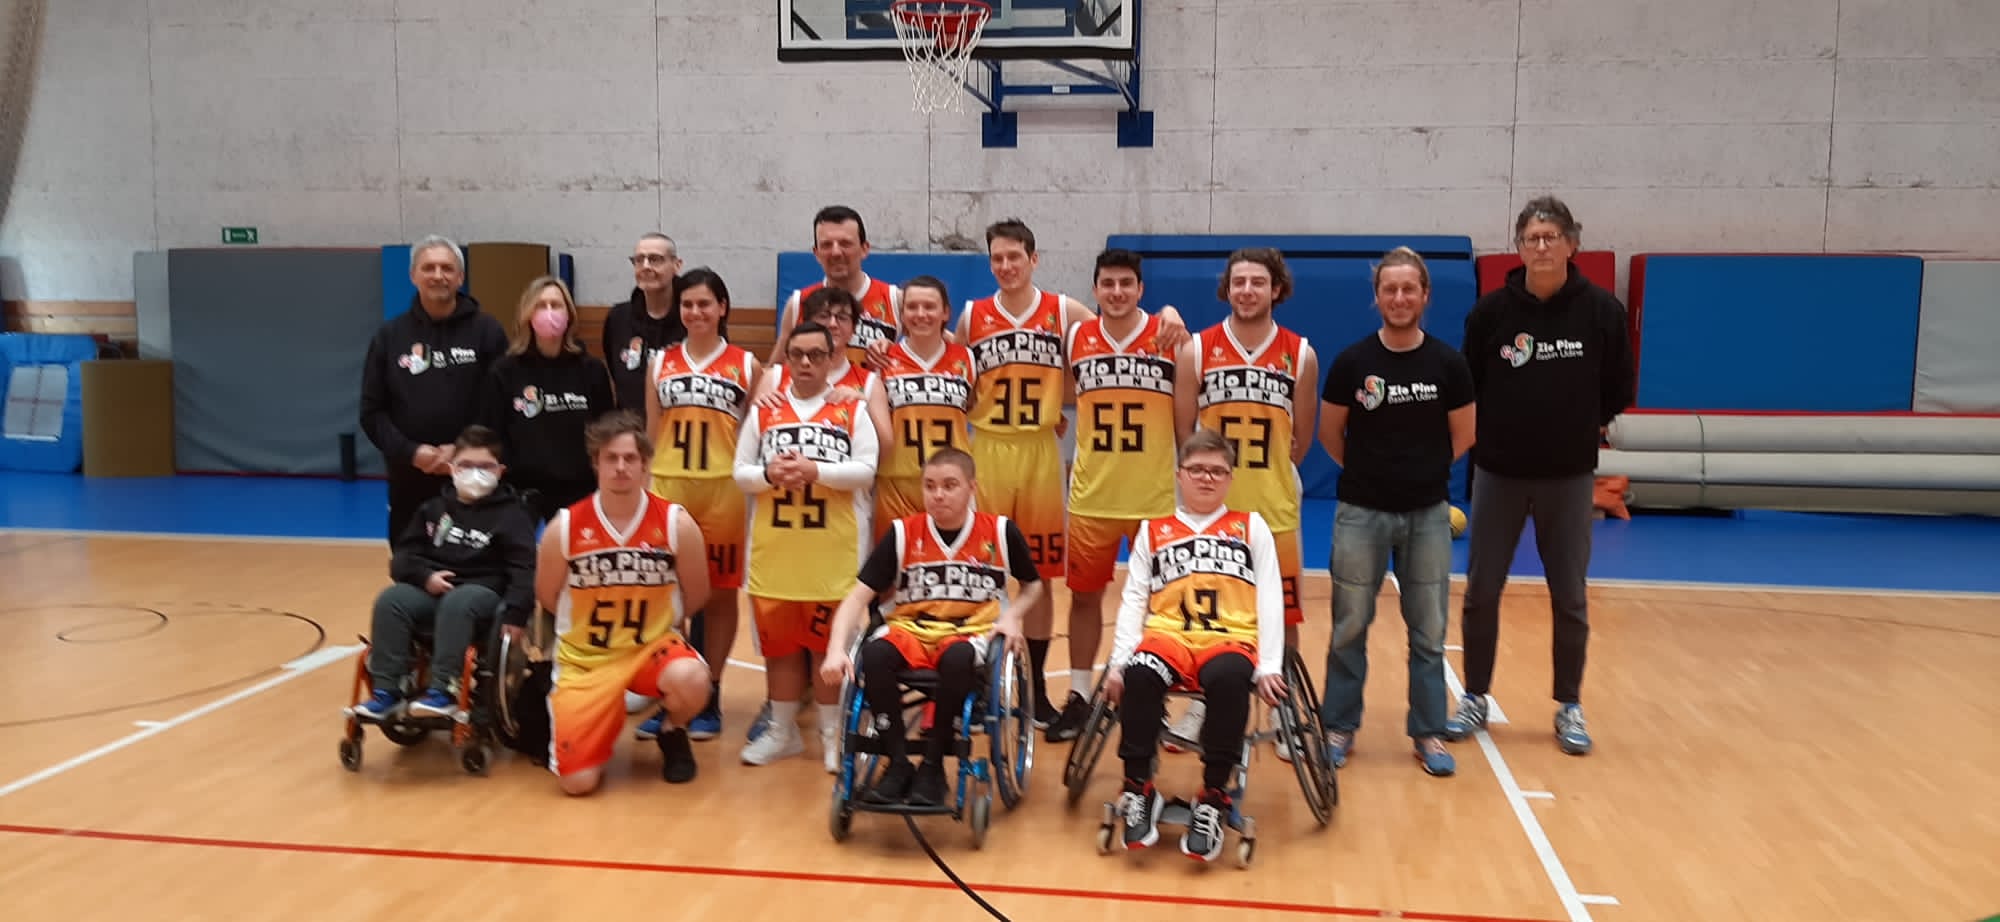 Festa del Baskin Zio Pino, Campione d’Italia 2024                                               Persone con disabilità e senza disabilità giocano INSIEME una pallacanestro inclusiva e felice.